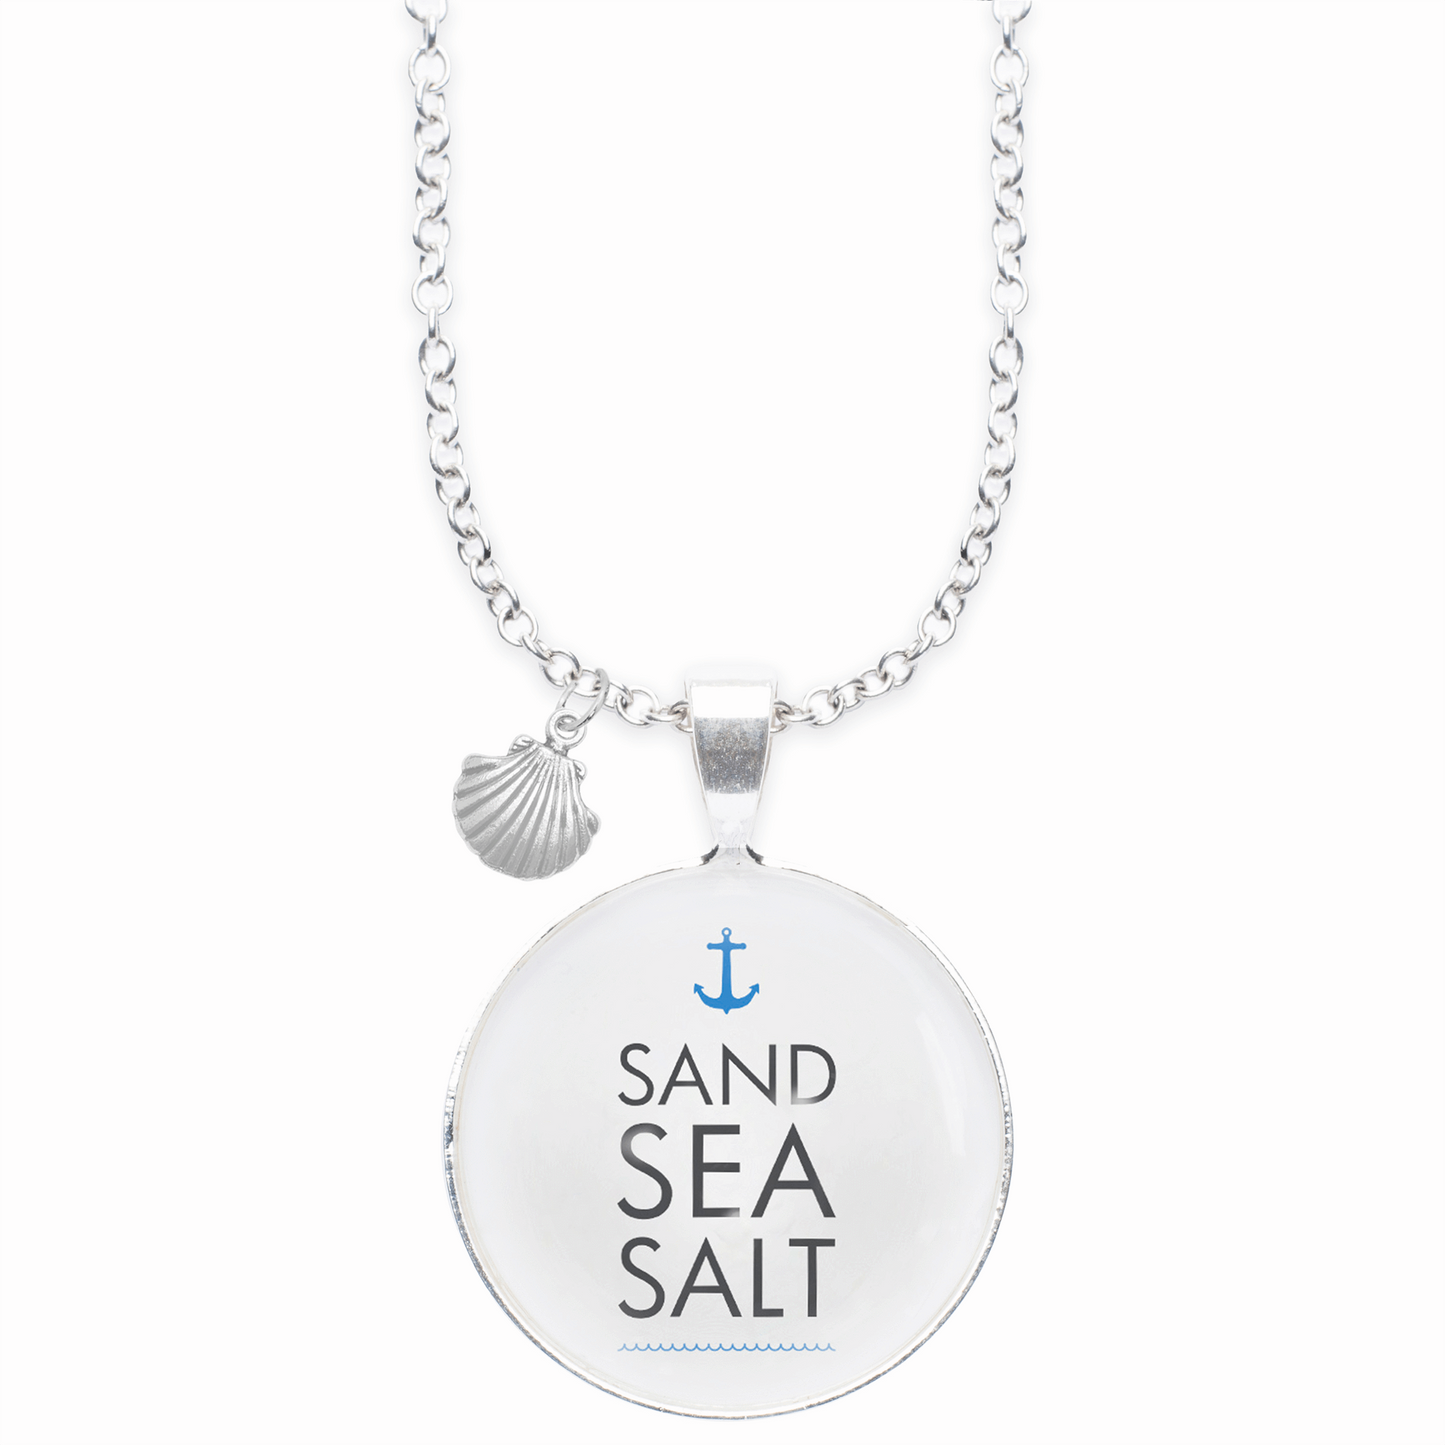 sand sea salt